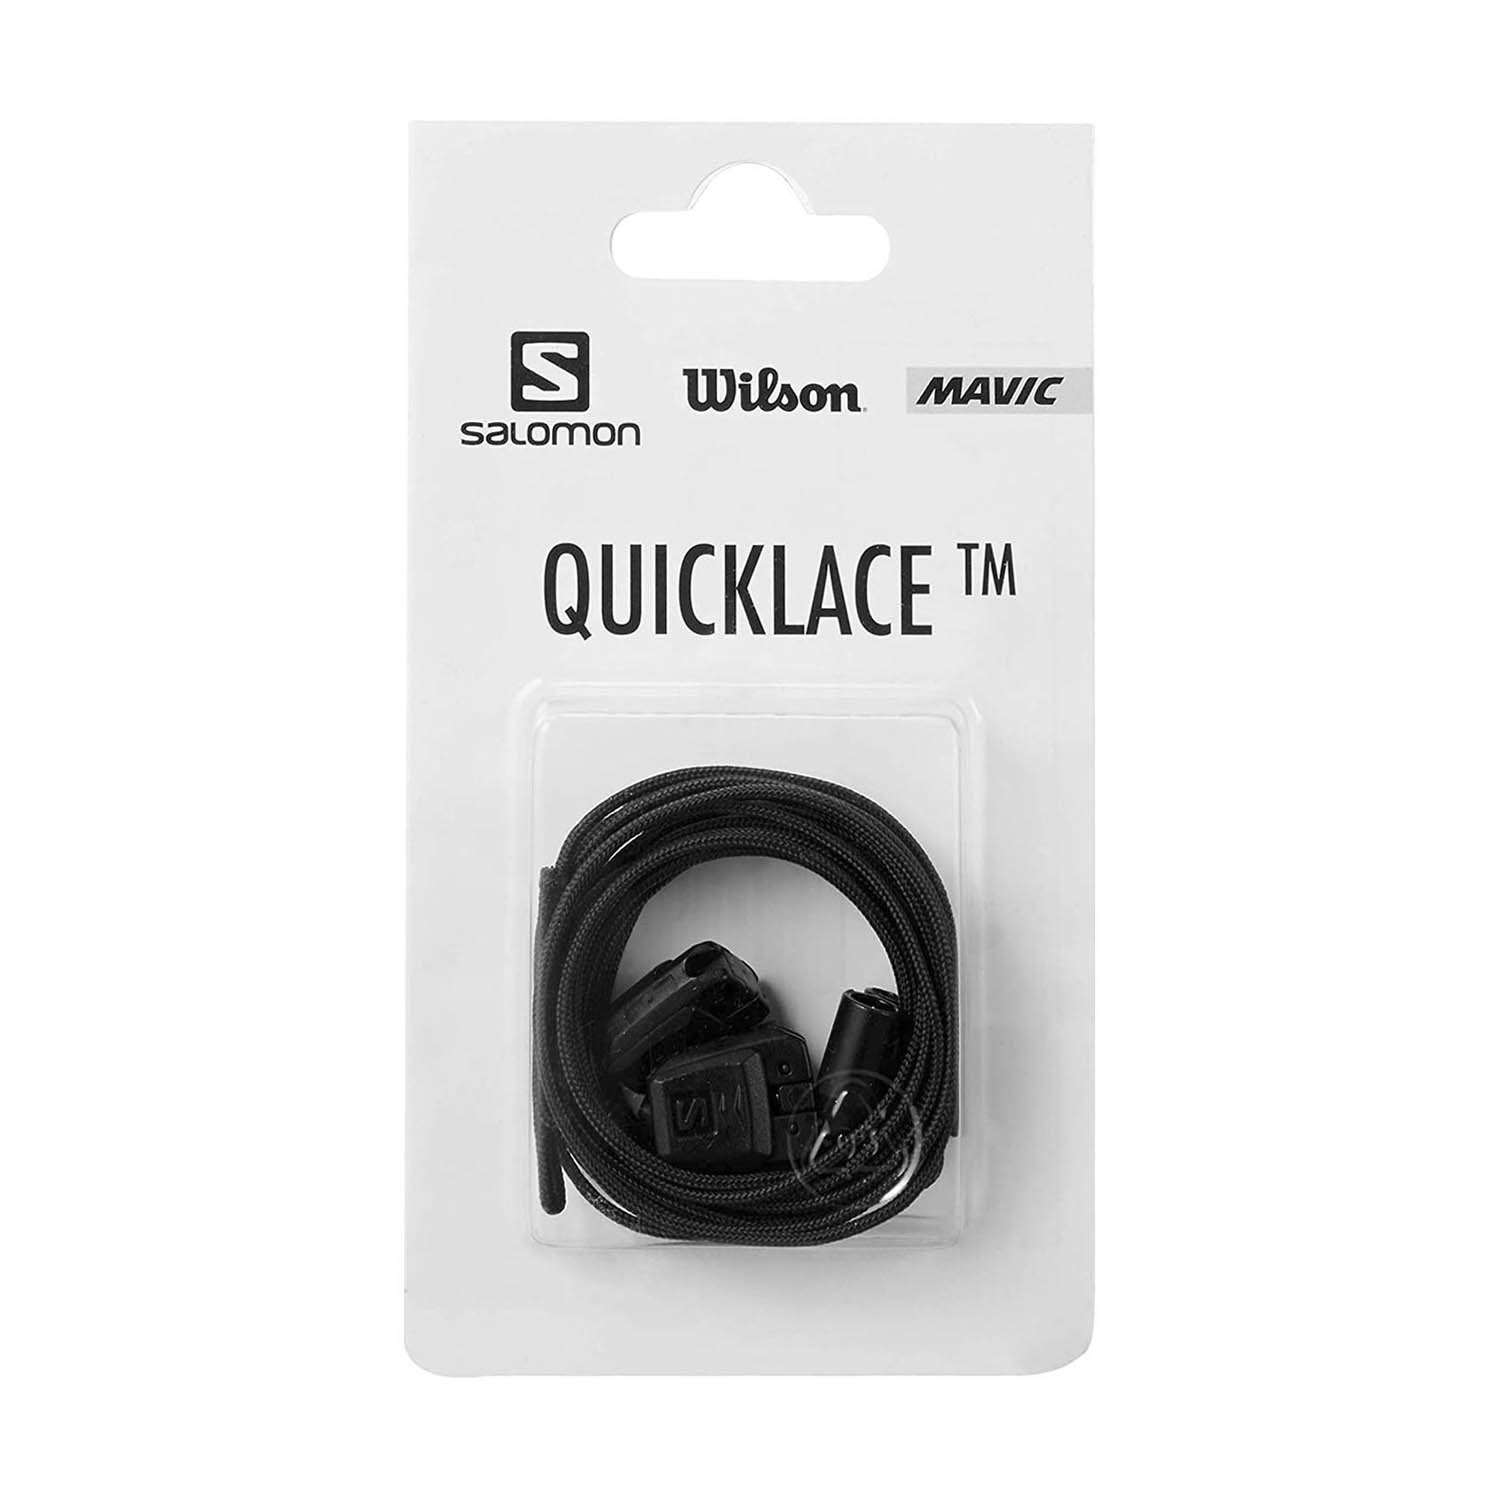 Salomon Quicklace Rapid Lace Kit Replacement - Black